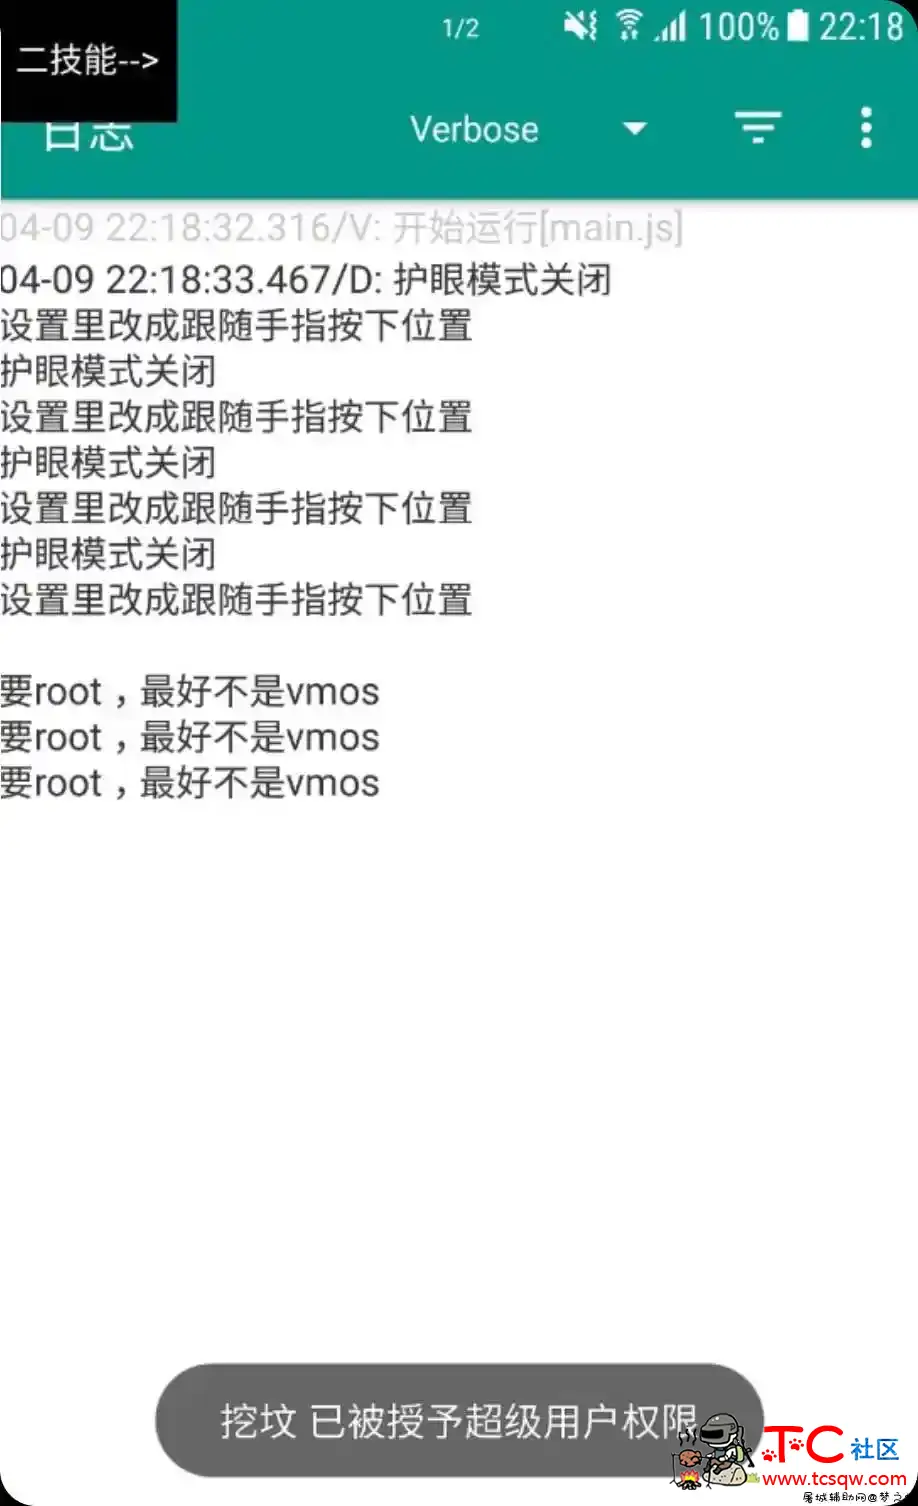 王者荣耀root专用百里守约触摸自瞄插件1.0.1 屠城辅助网www.tcfz1.com4646